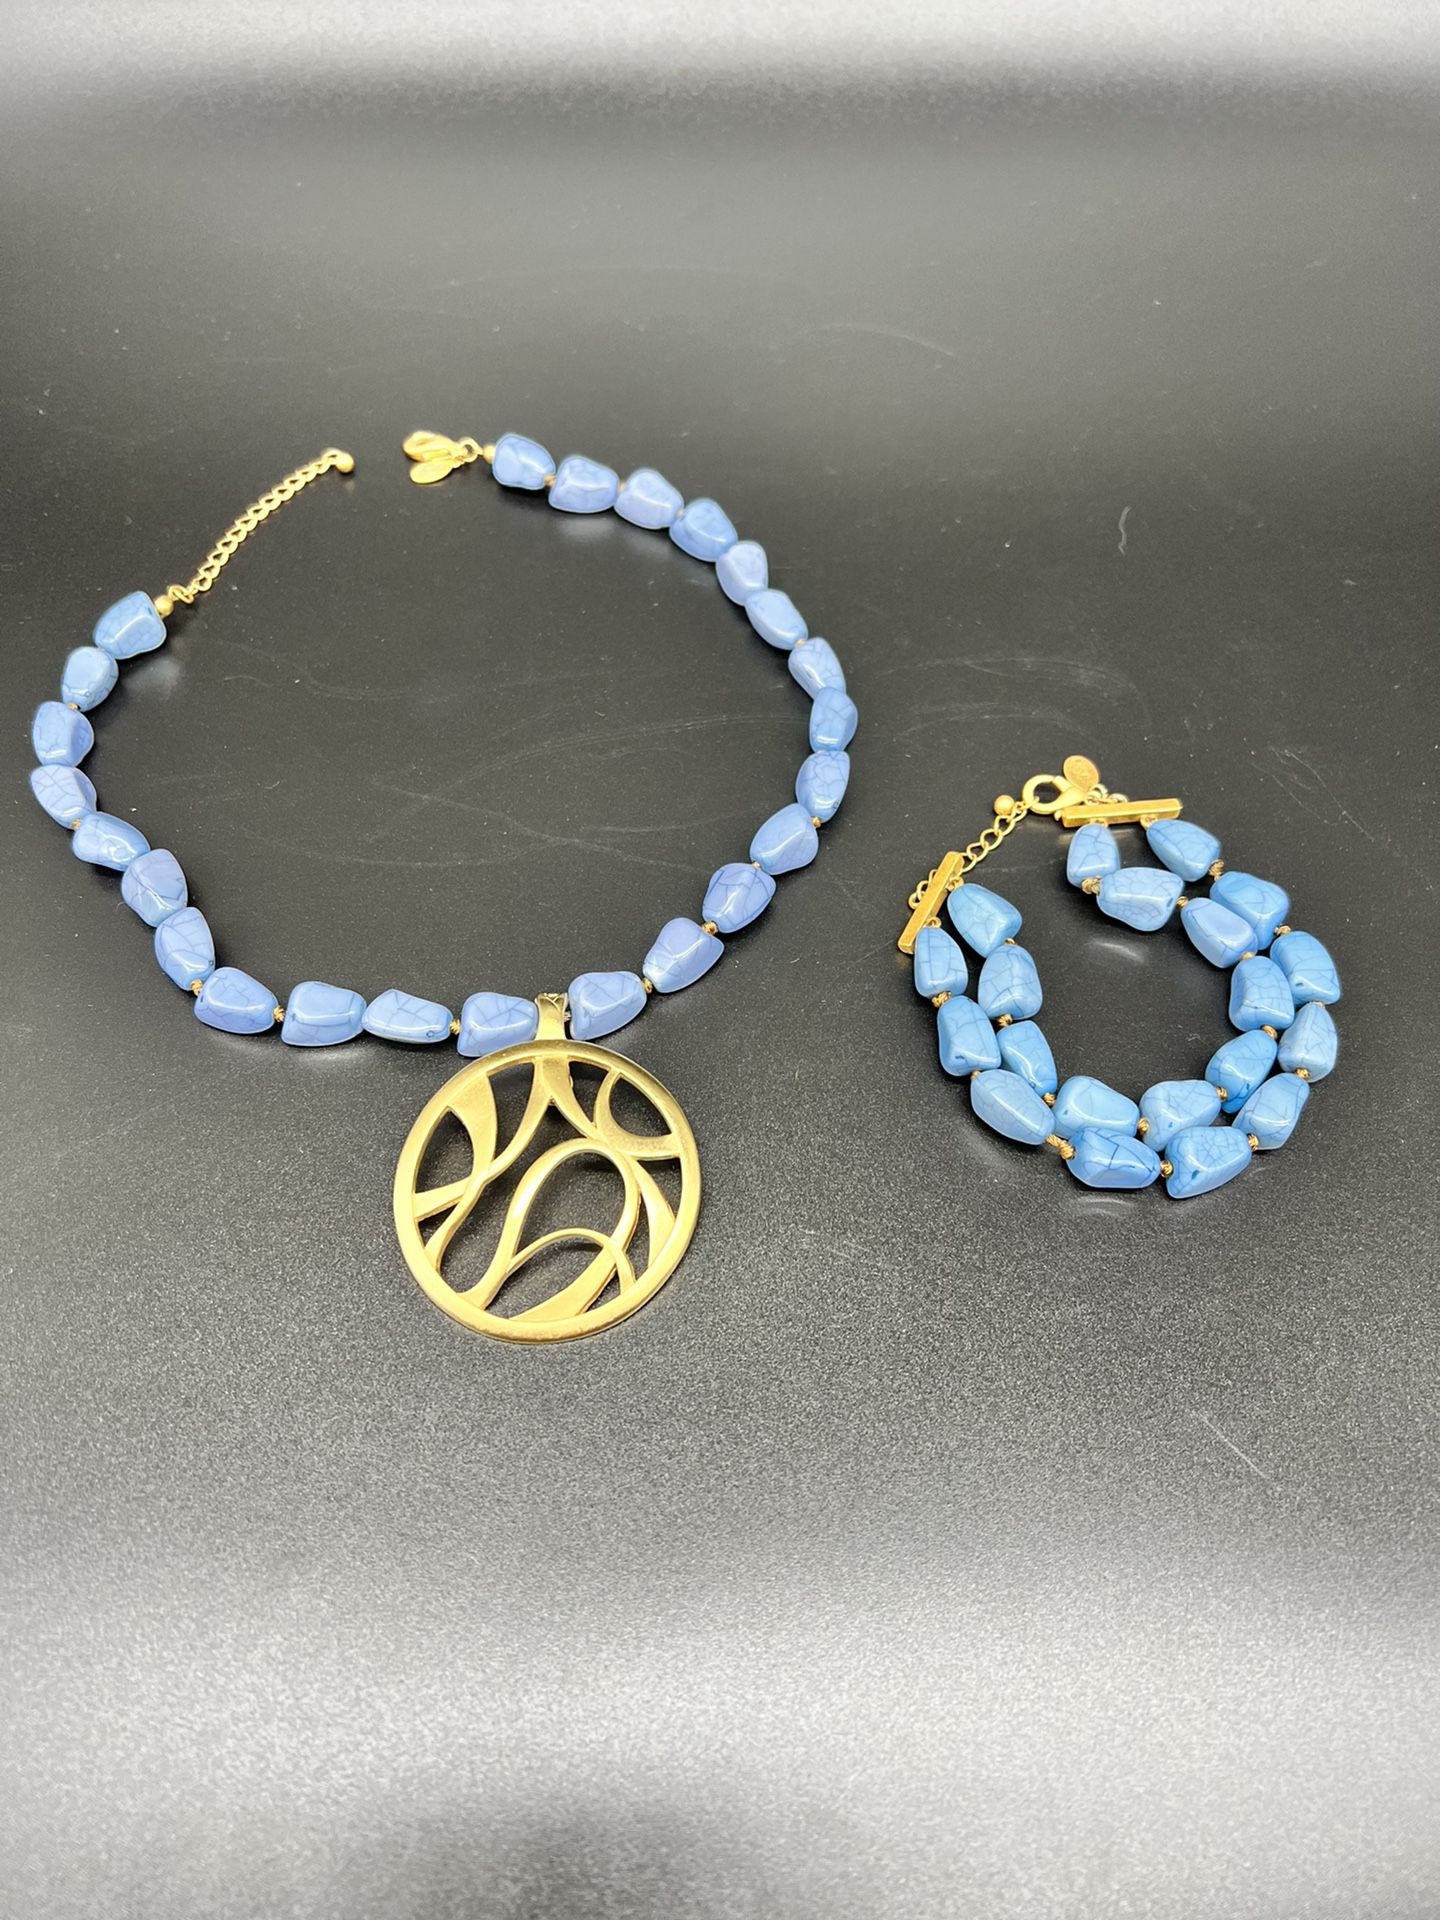 Pierre Lang vintage necklace and bracelet. Gold plated pendent / blue gemstones